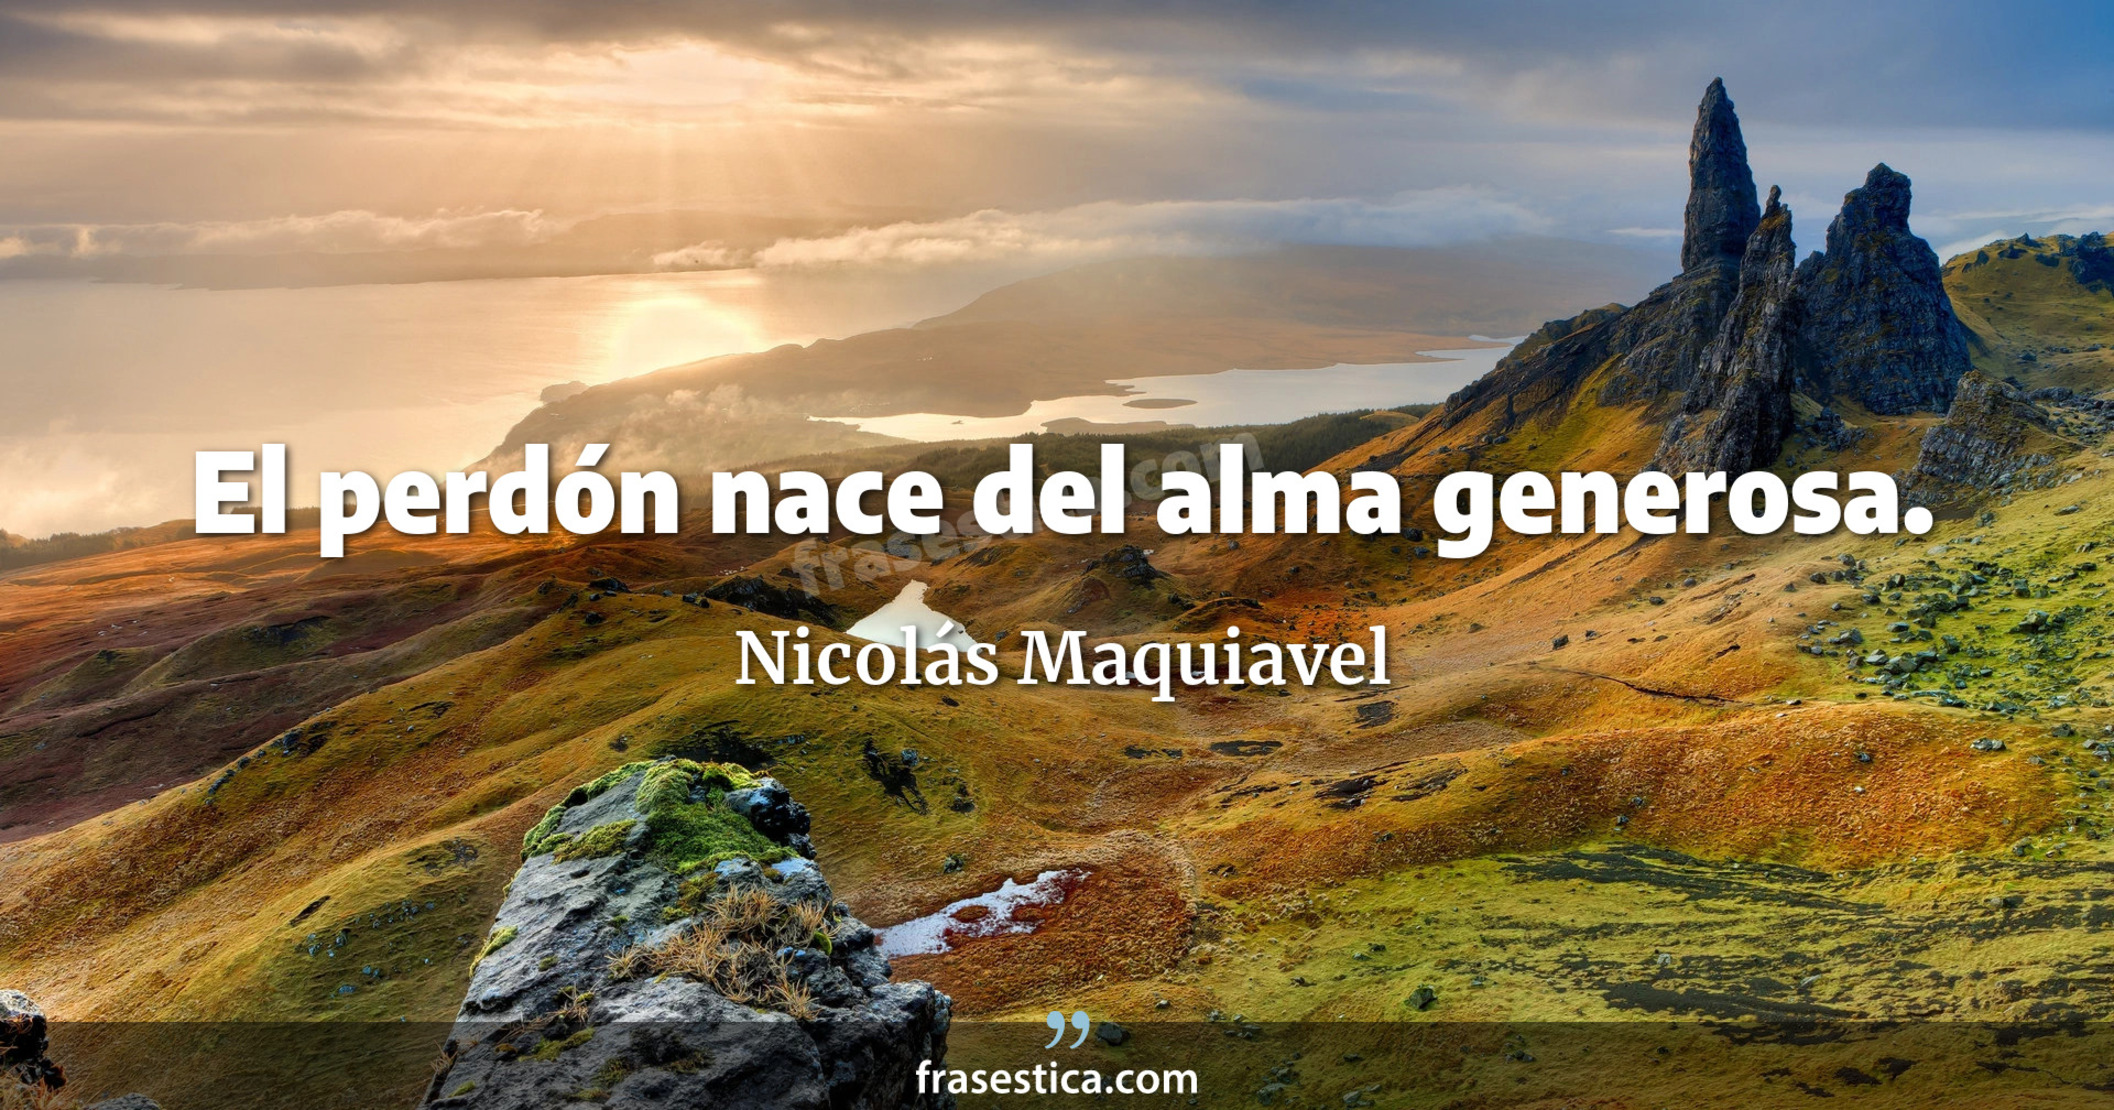 El perdón nace del alma generosa. - Nicolás Maquiavel